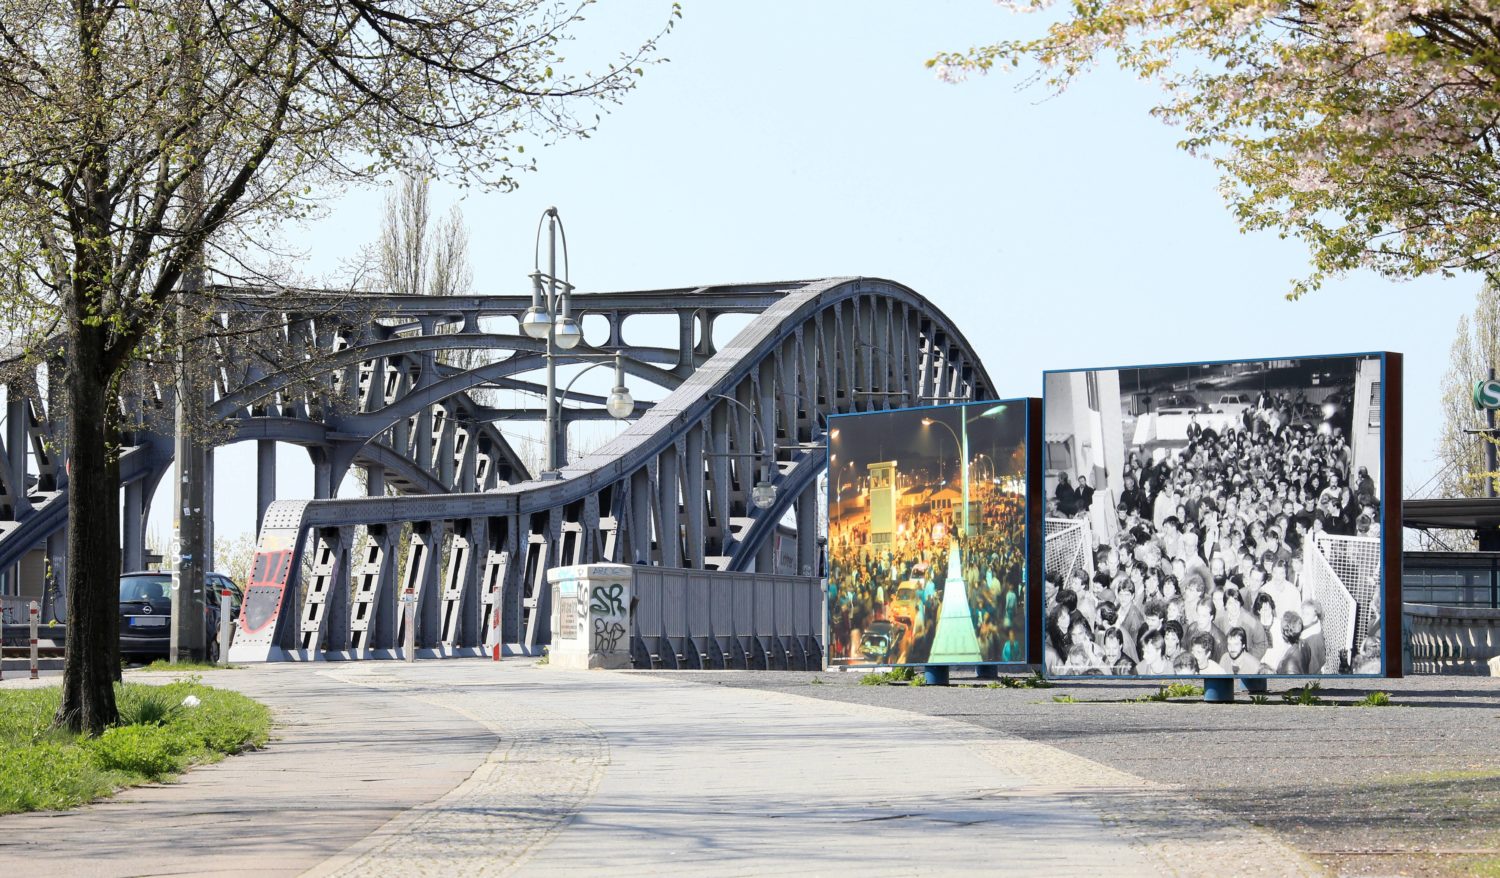 Informationstafeln zum Mauerfall findet man hier. Die Bornholmer Brücke kann man ganz normal passiere. Foto: Imago/Andreas Gora